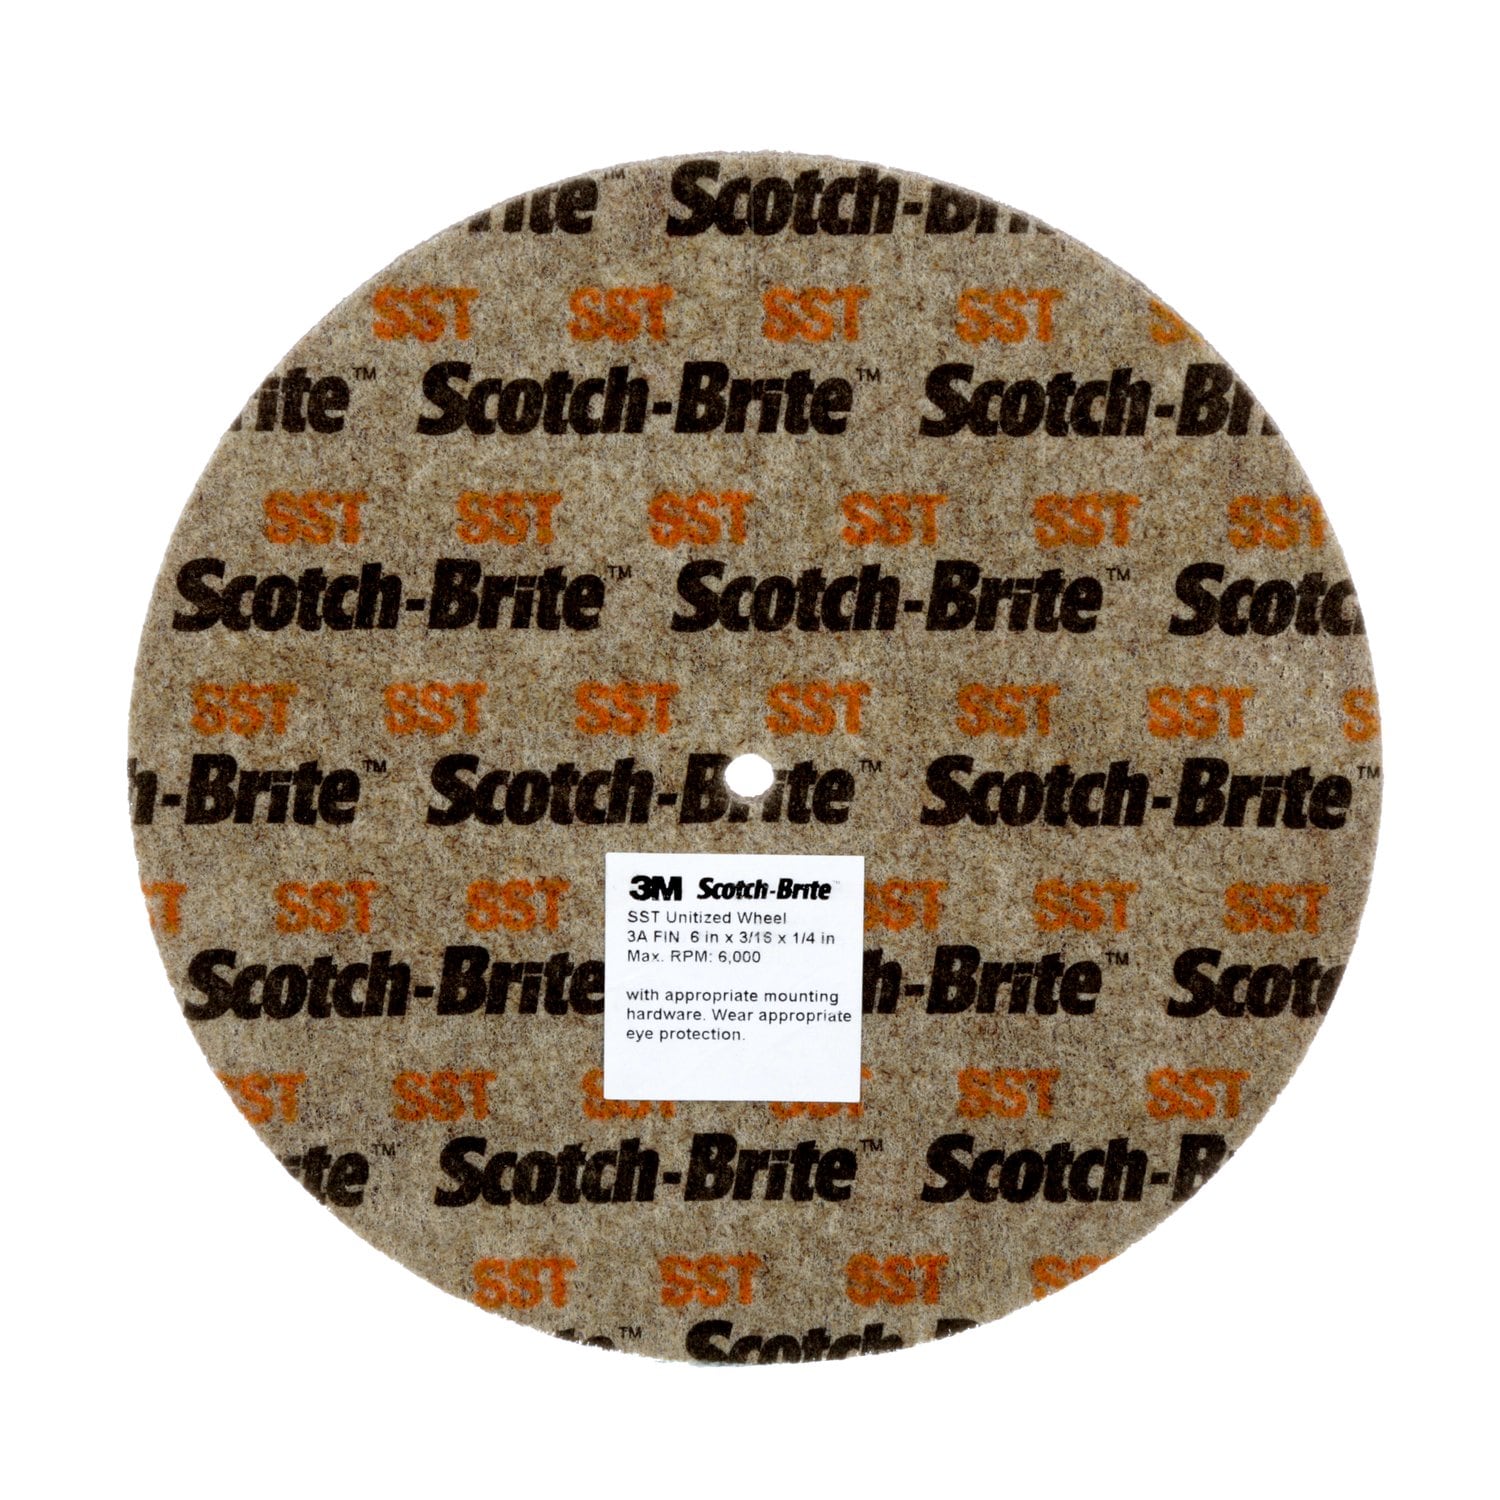 7010365167 - Scotch-Brite SST Unitized Wheel, 14 in x 1 in x 1-1/4 in 5A FIN, 1
ea/Case